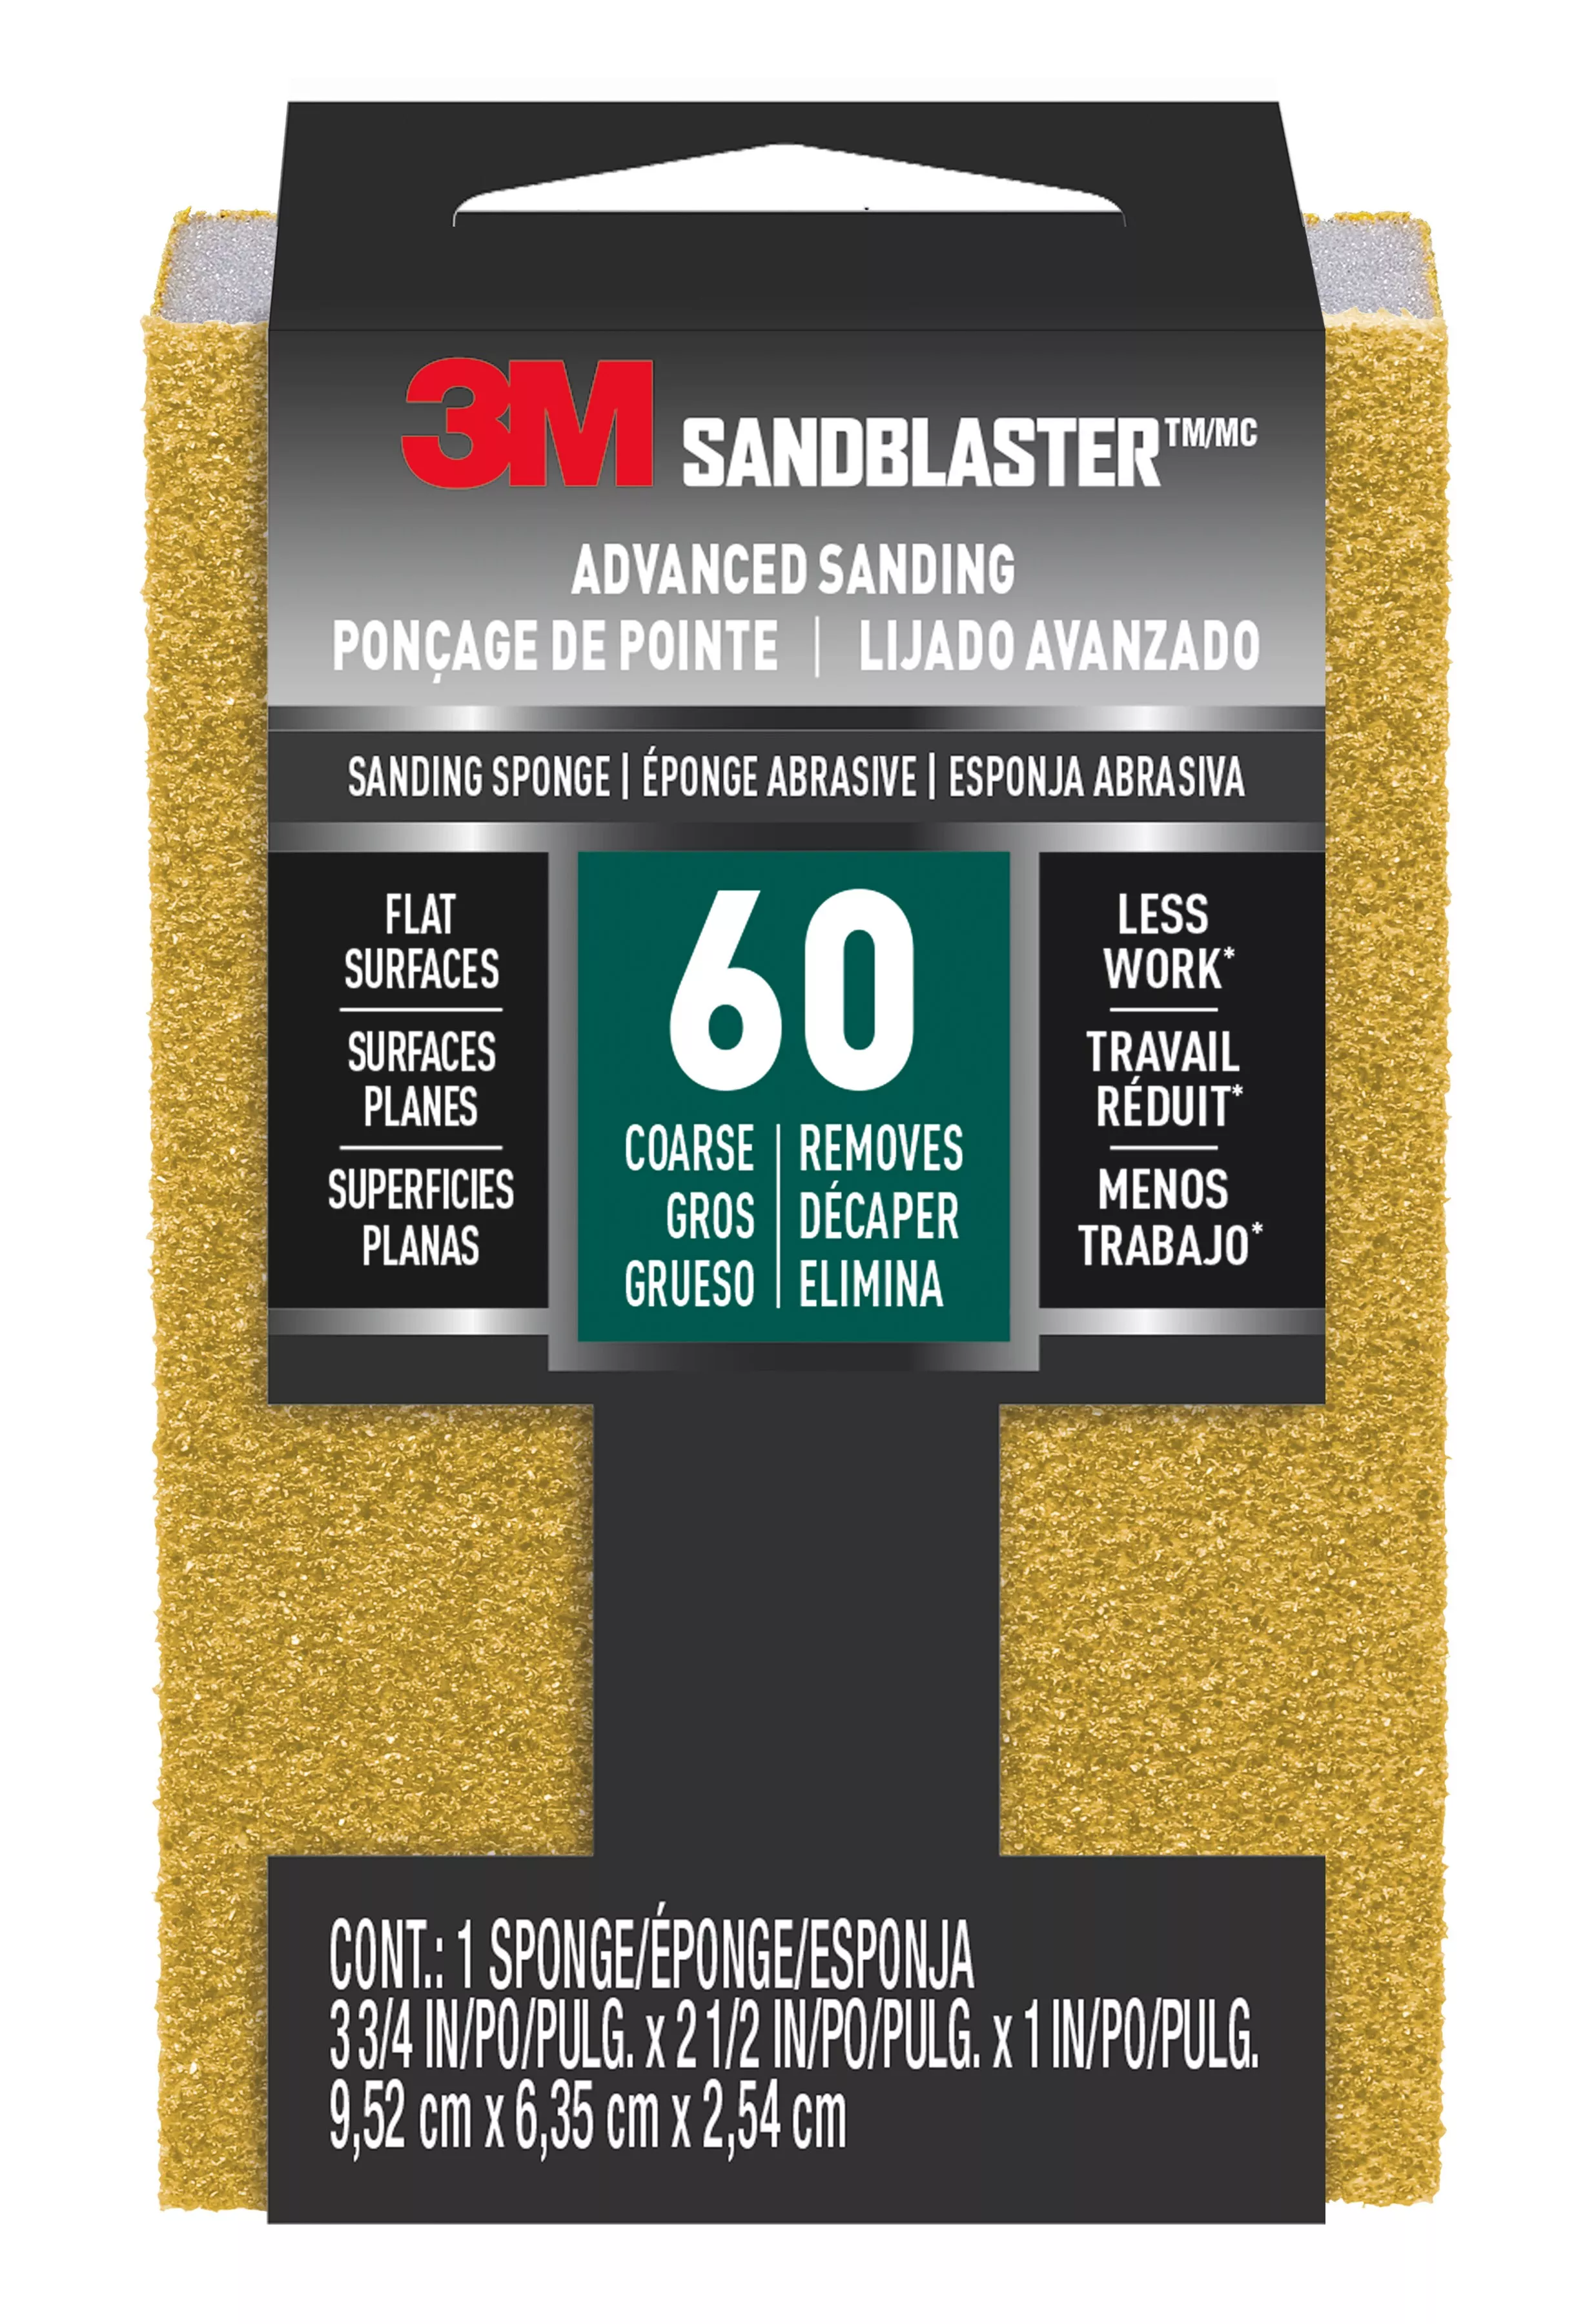 3M™ SandBlaster™ Advanced Sanding Sanding Sponge 20909-60, 60 grit, 3 3/4 in x 2 1/2 x 1 in, 1/pk